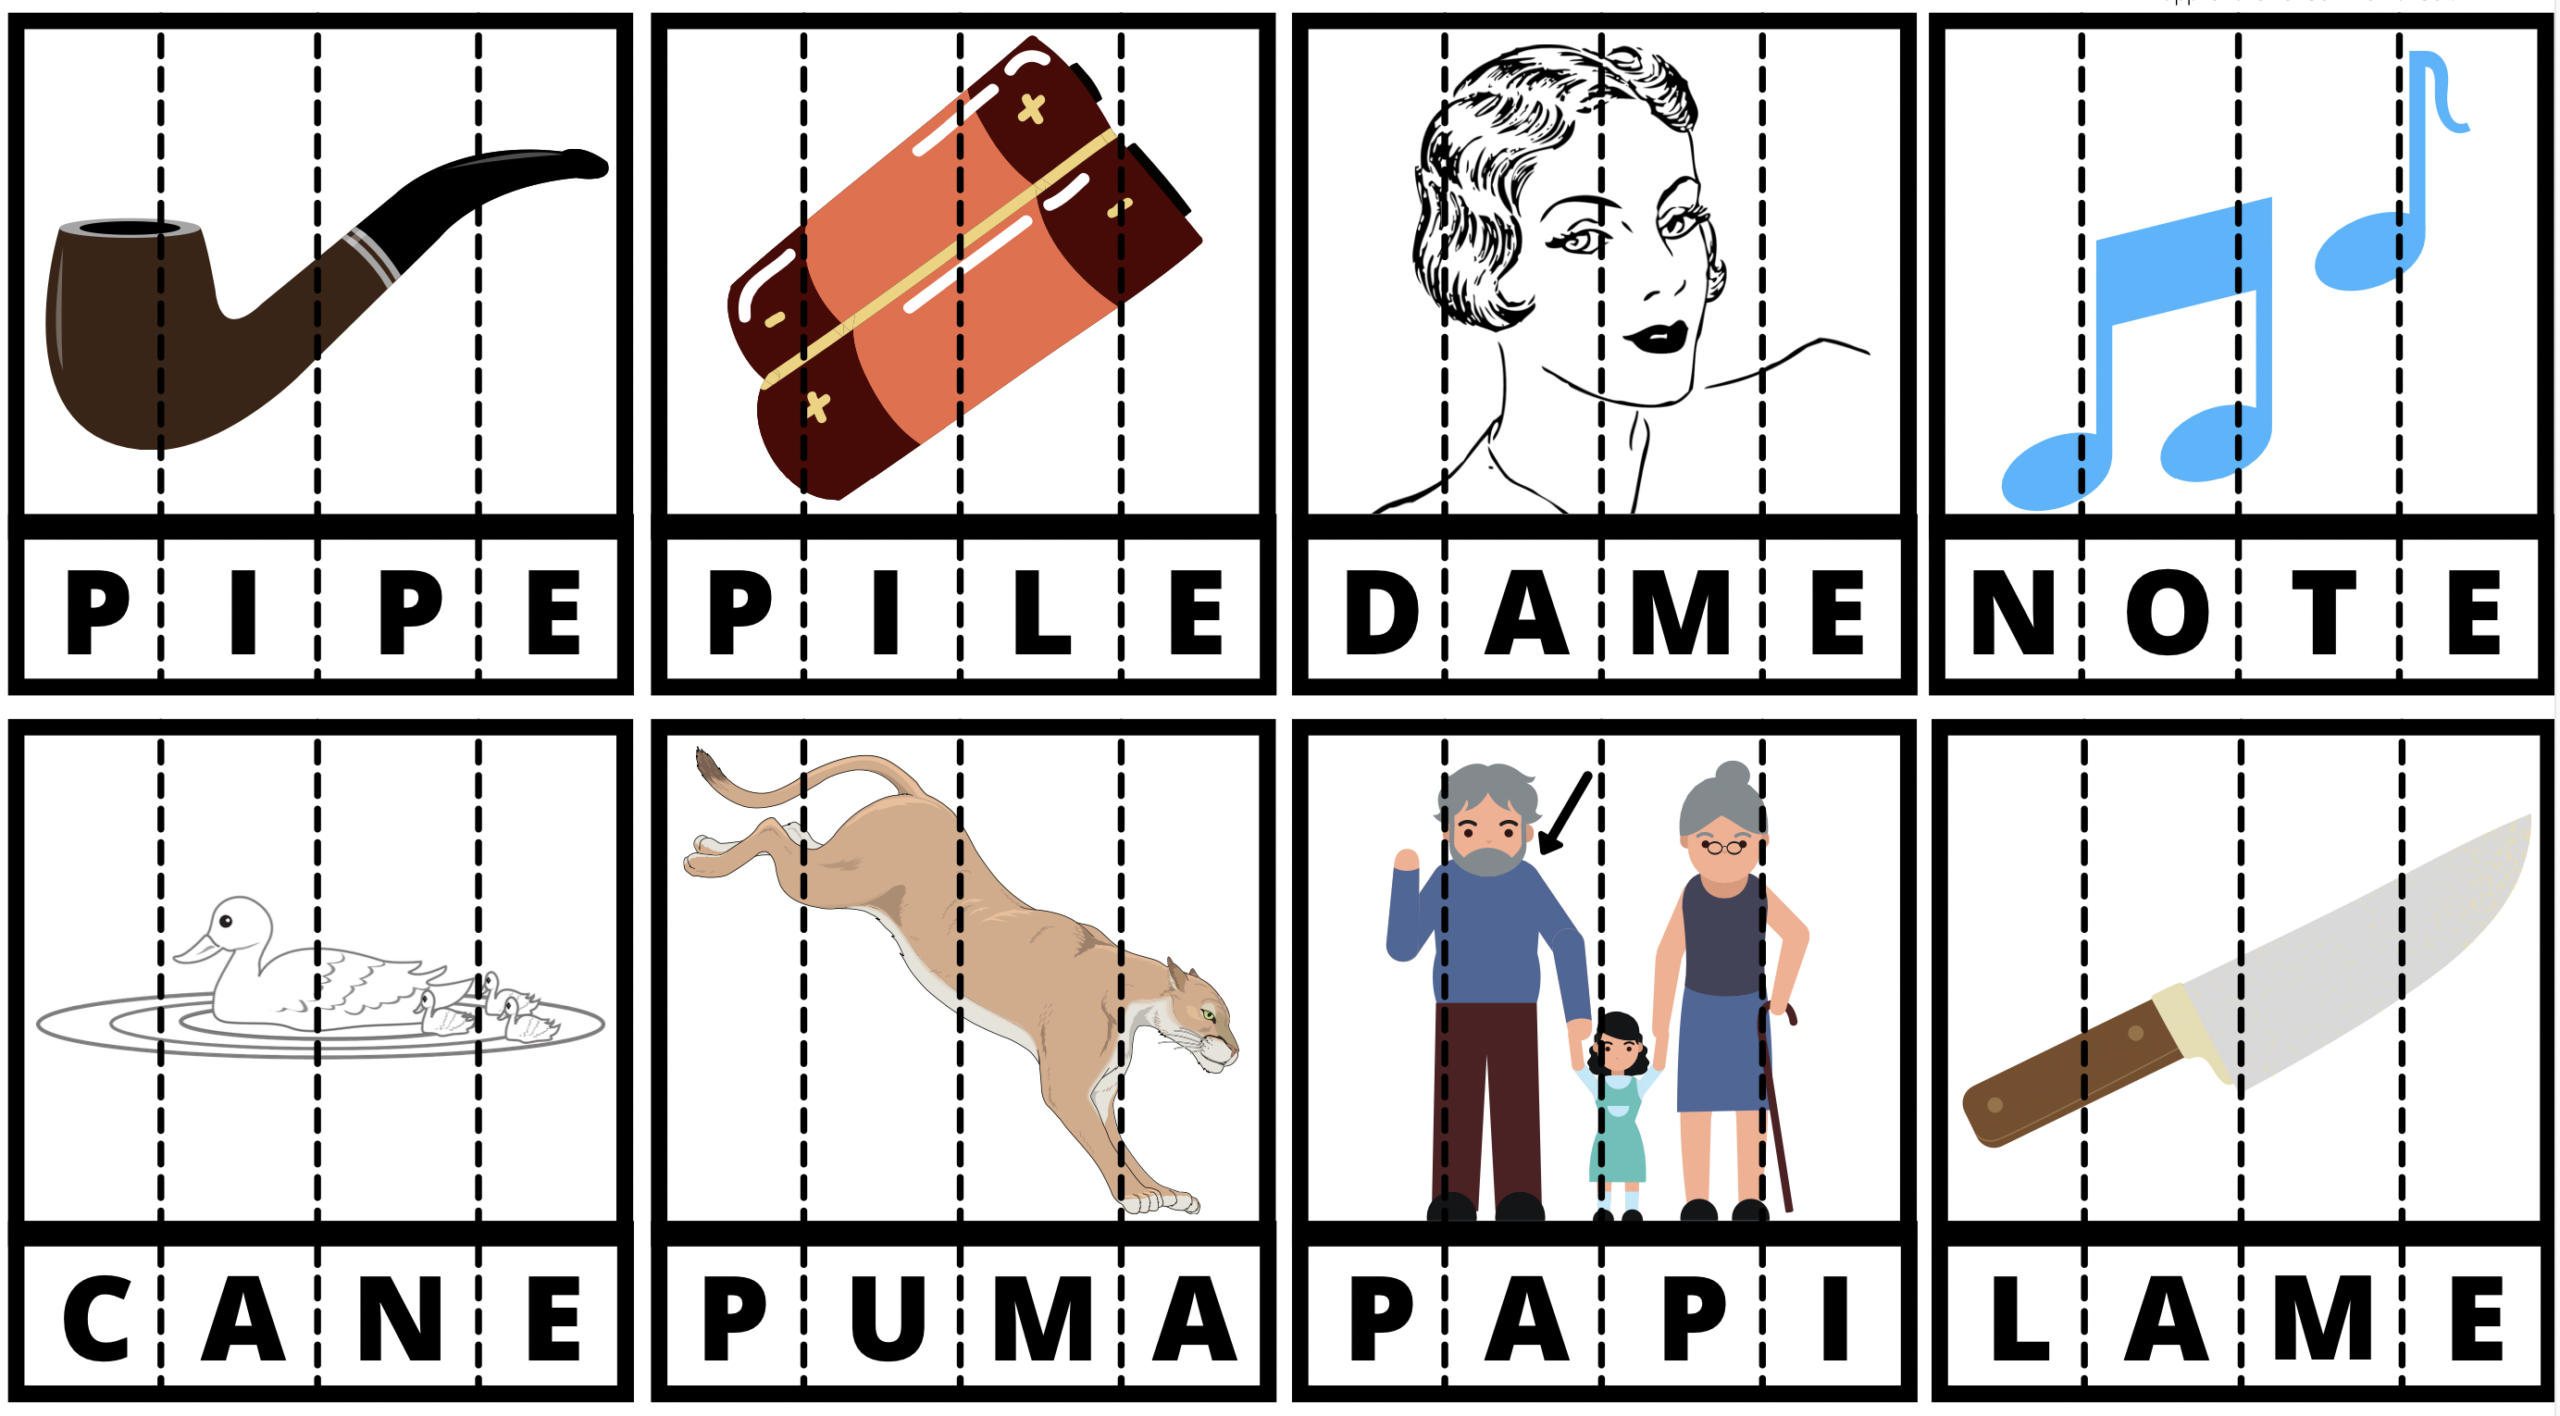 16 cartes de lecture avec des mots simples de 4 lettres pour les lecteurs  débutants - Apprendre, réviser, mémoriser